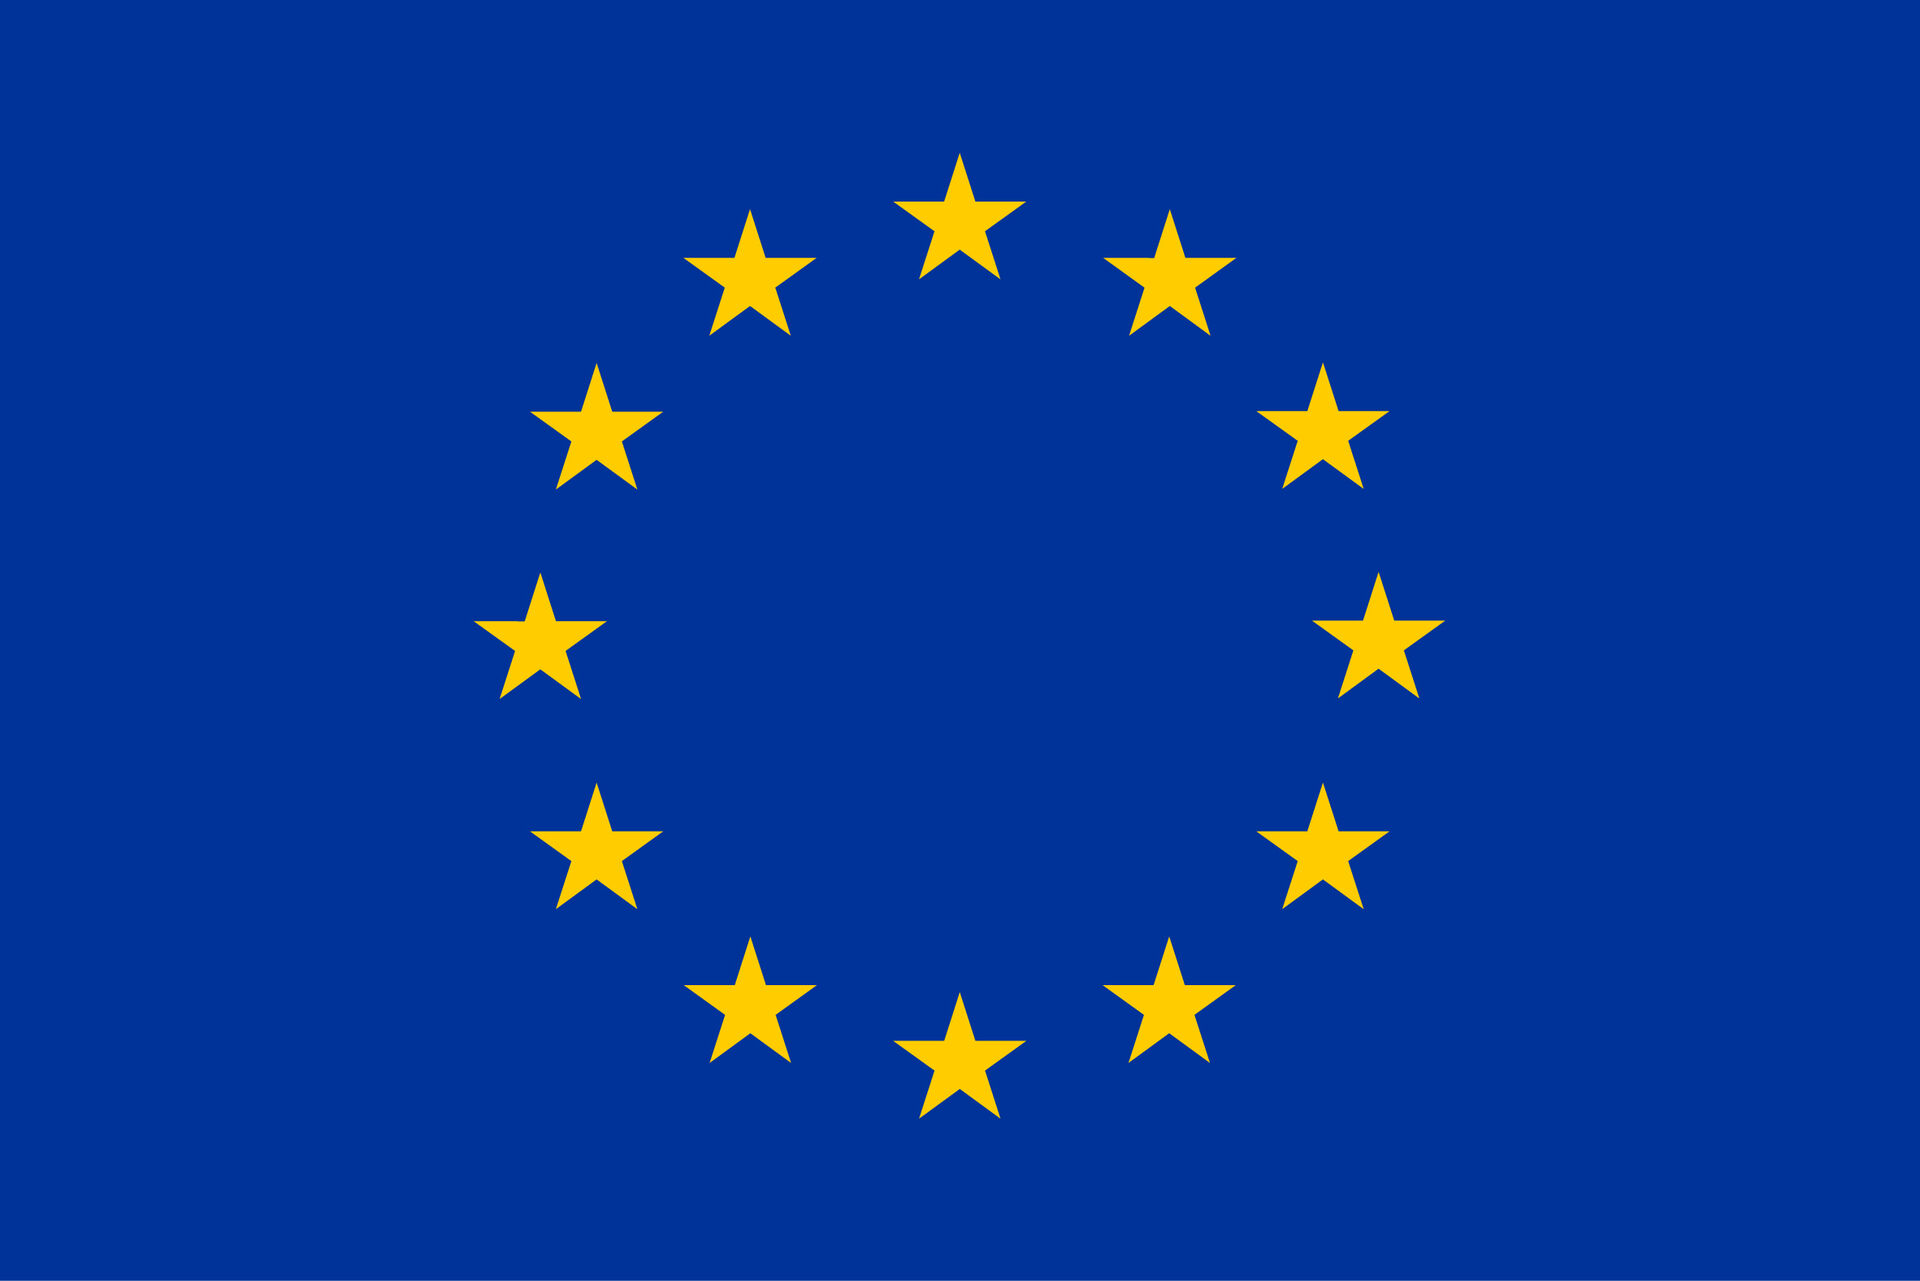 EU-flagget. Tolv stjerner på en blå bakgrunn.